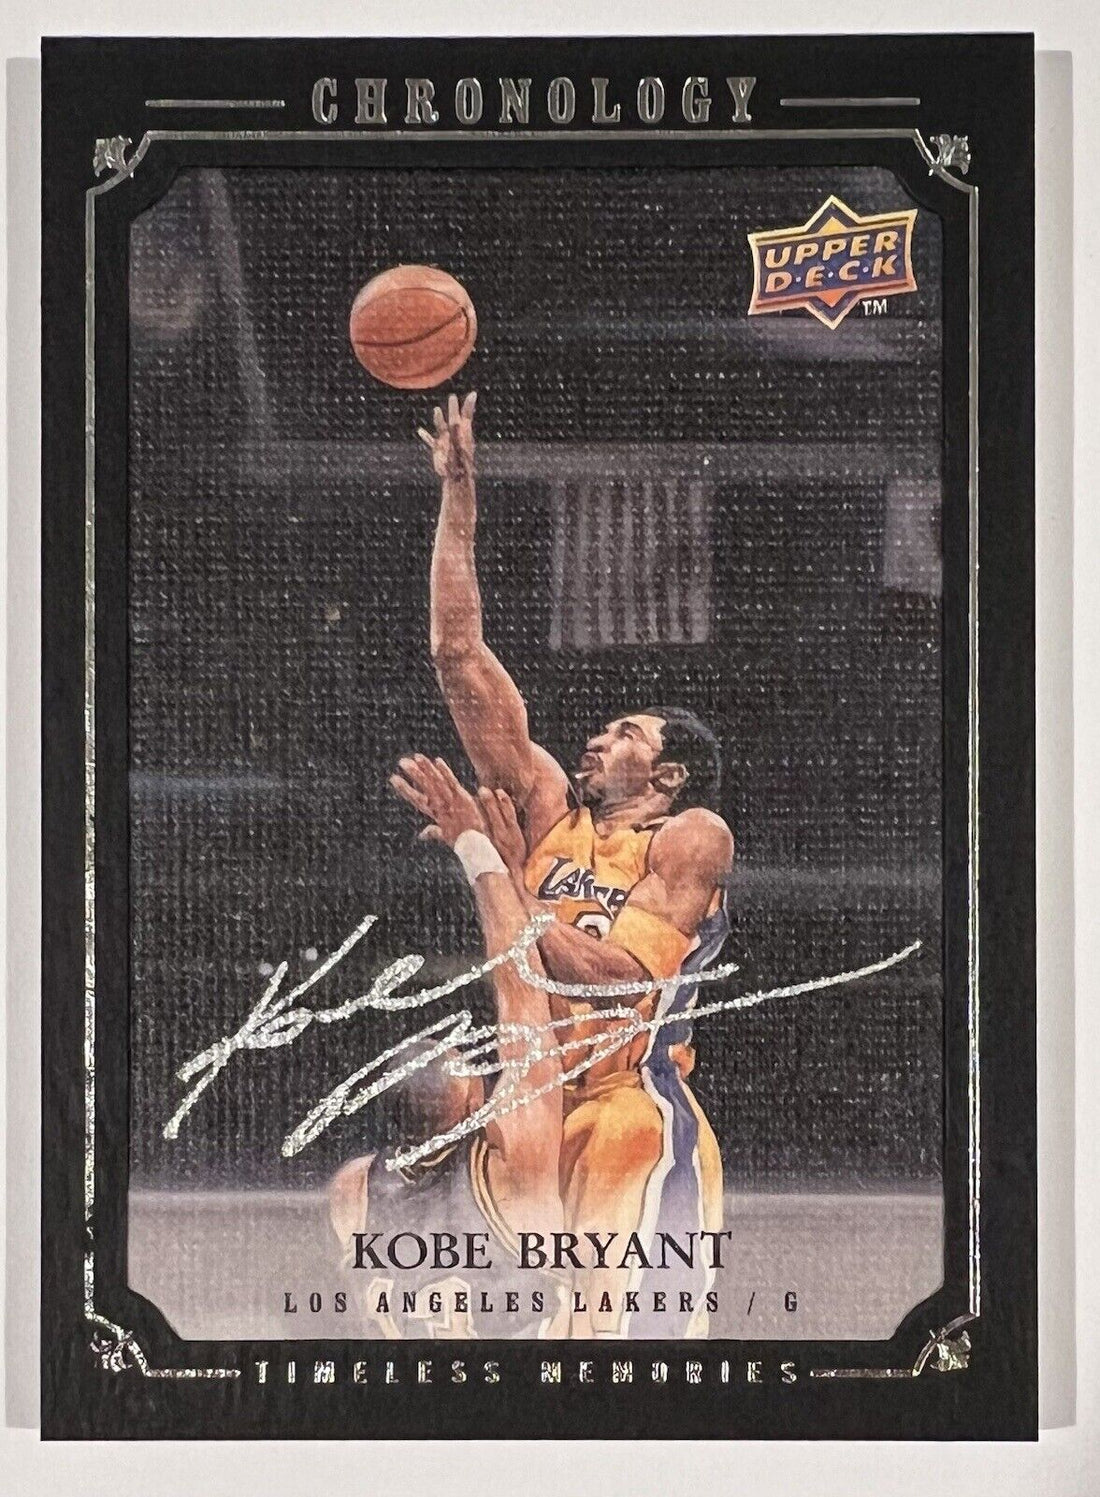 2007-08 NBA Chronology Kobe Bryant Upper Deck Timeless Memories 